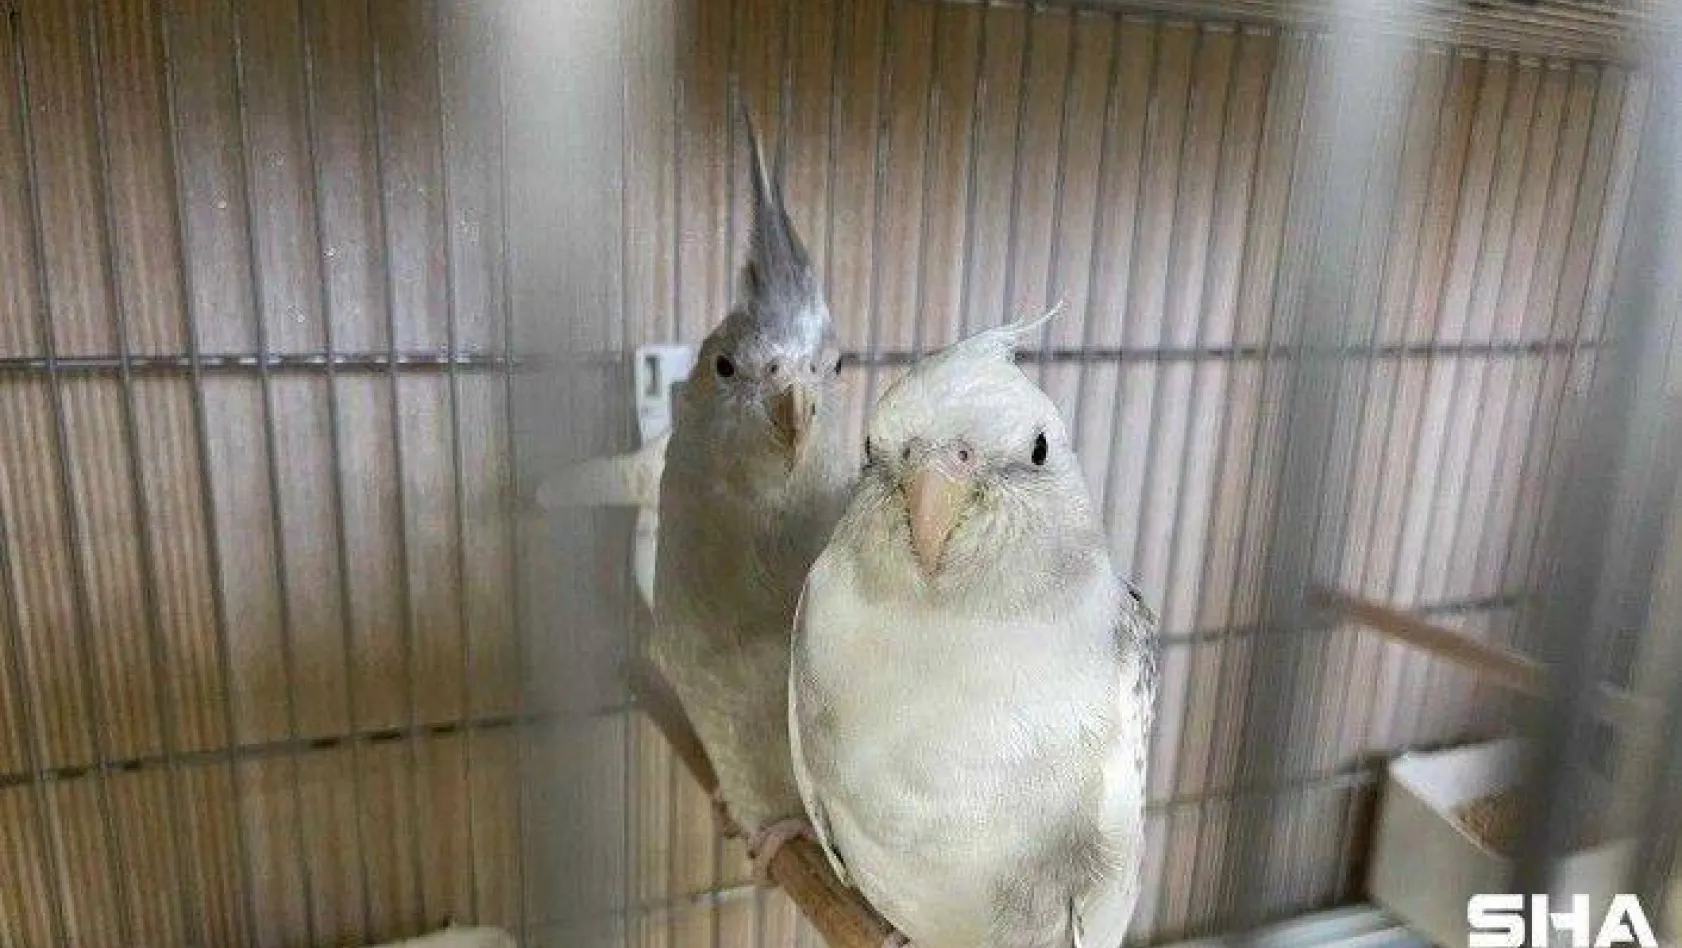 İstanbul'da 'kaçak papağan çiftliğine' operasyon: 45 papağan ele geçirildi